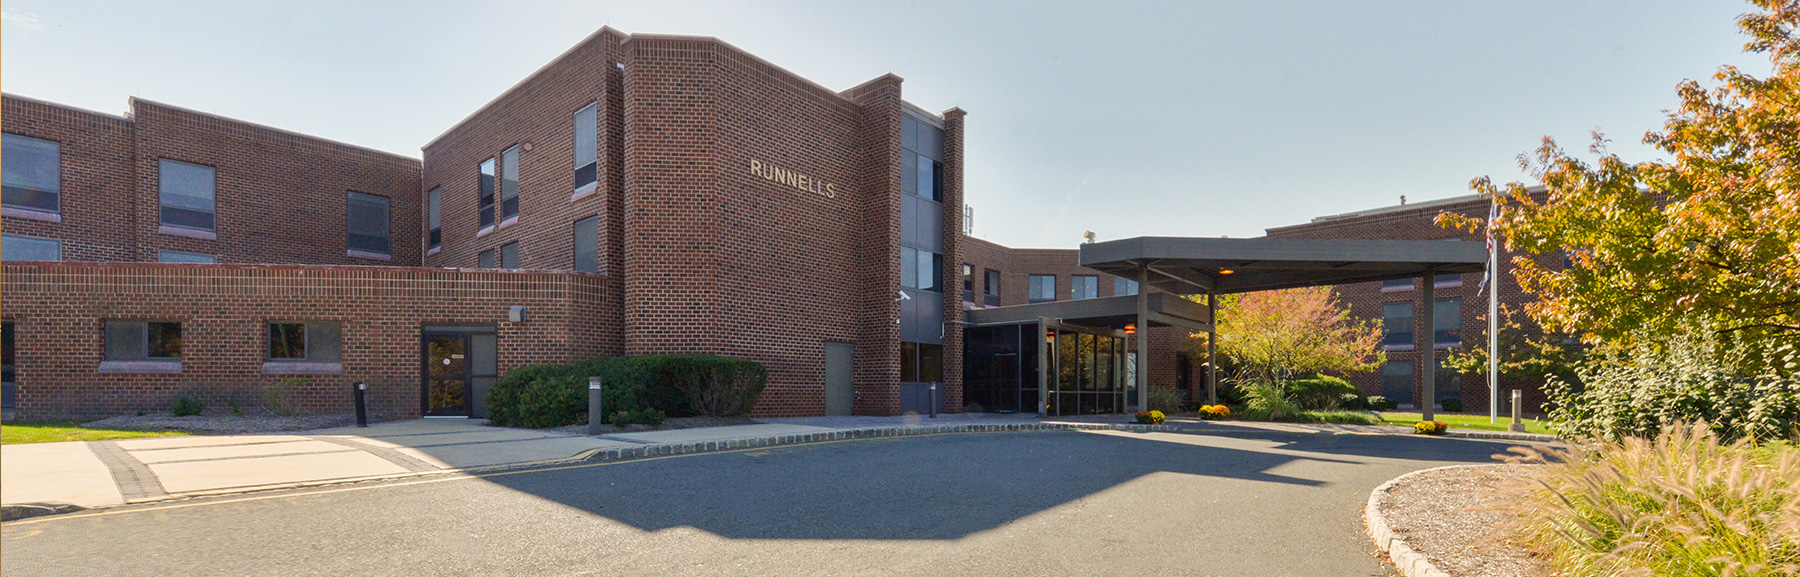 Runnells Center for Rehabilitation & Healthcare – Runnells Center ...